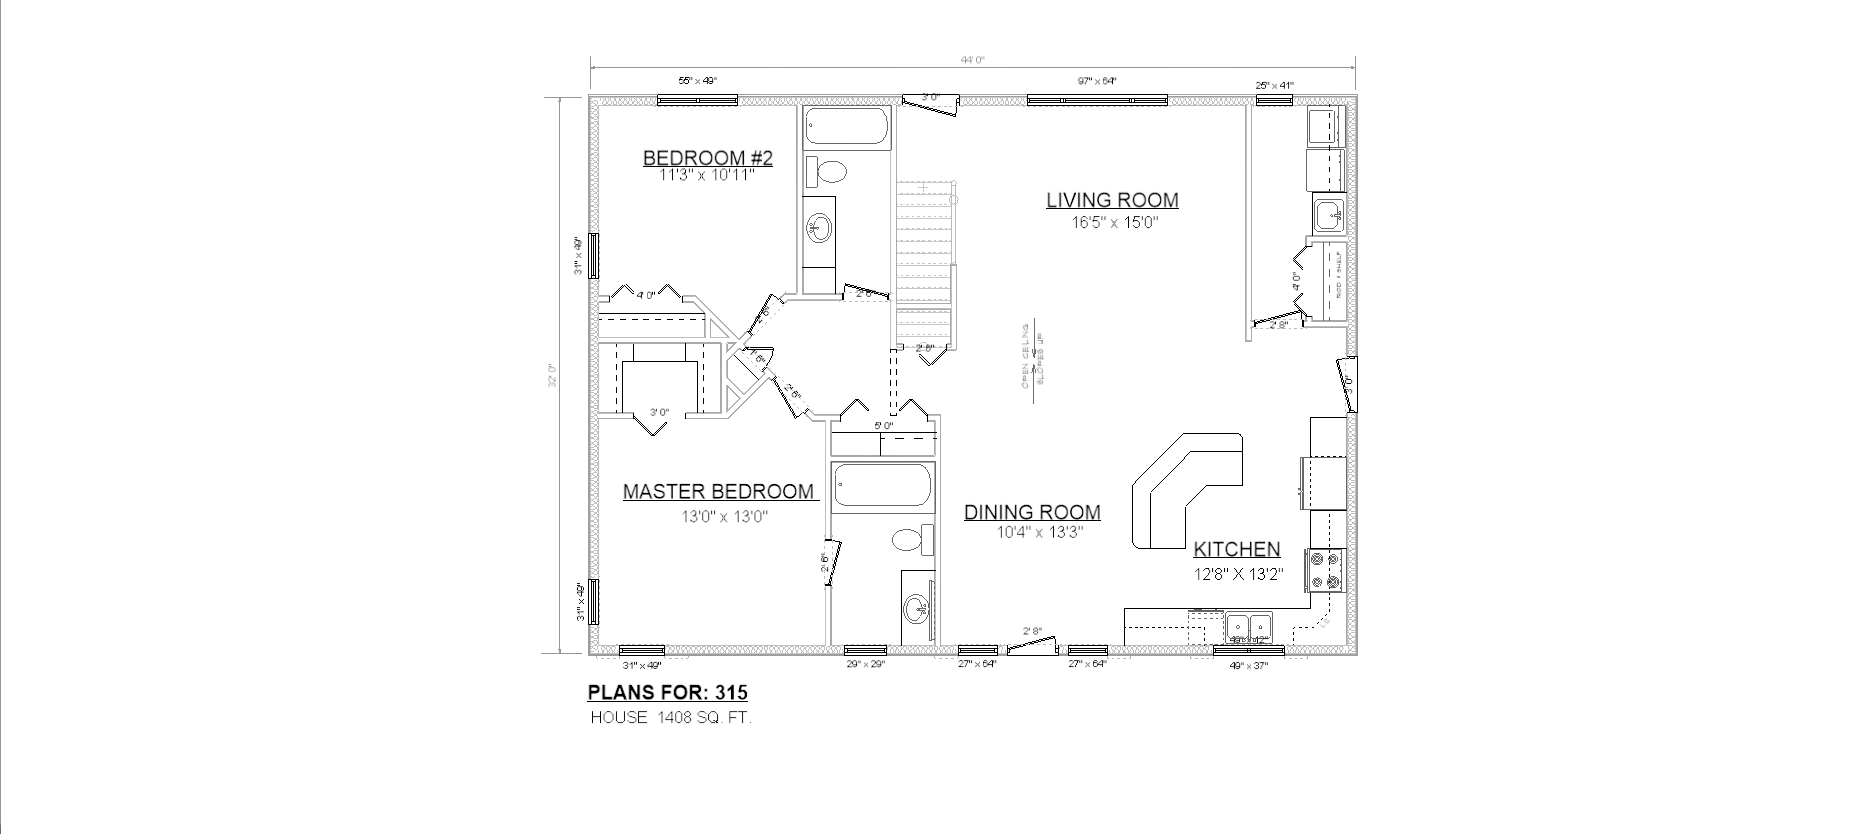 Penner Homes Floor Plan Id: 315